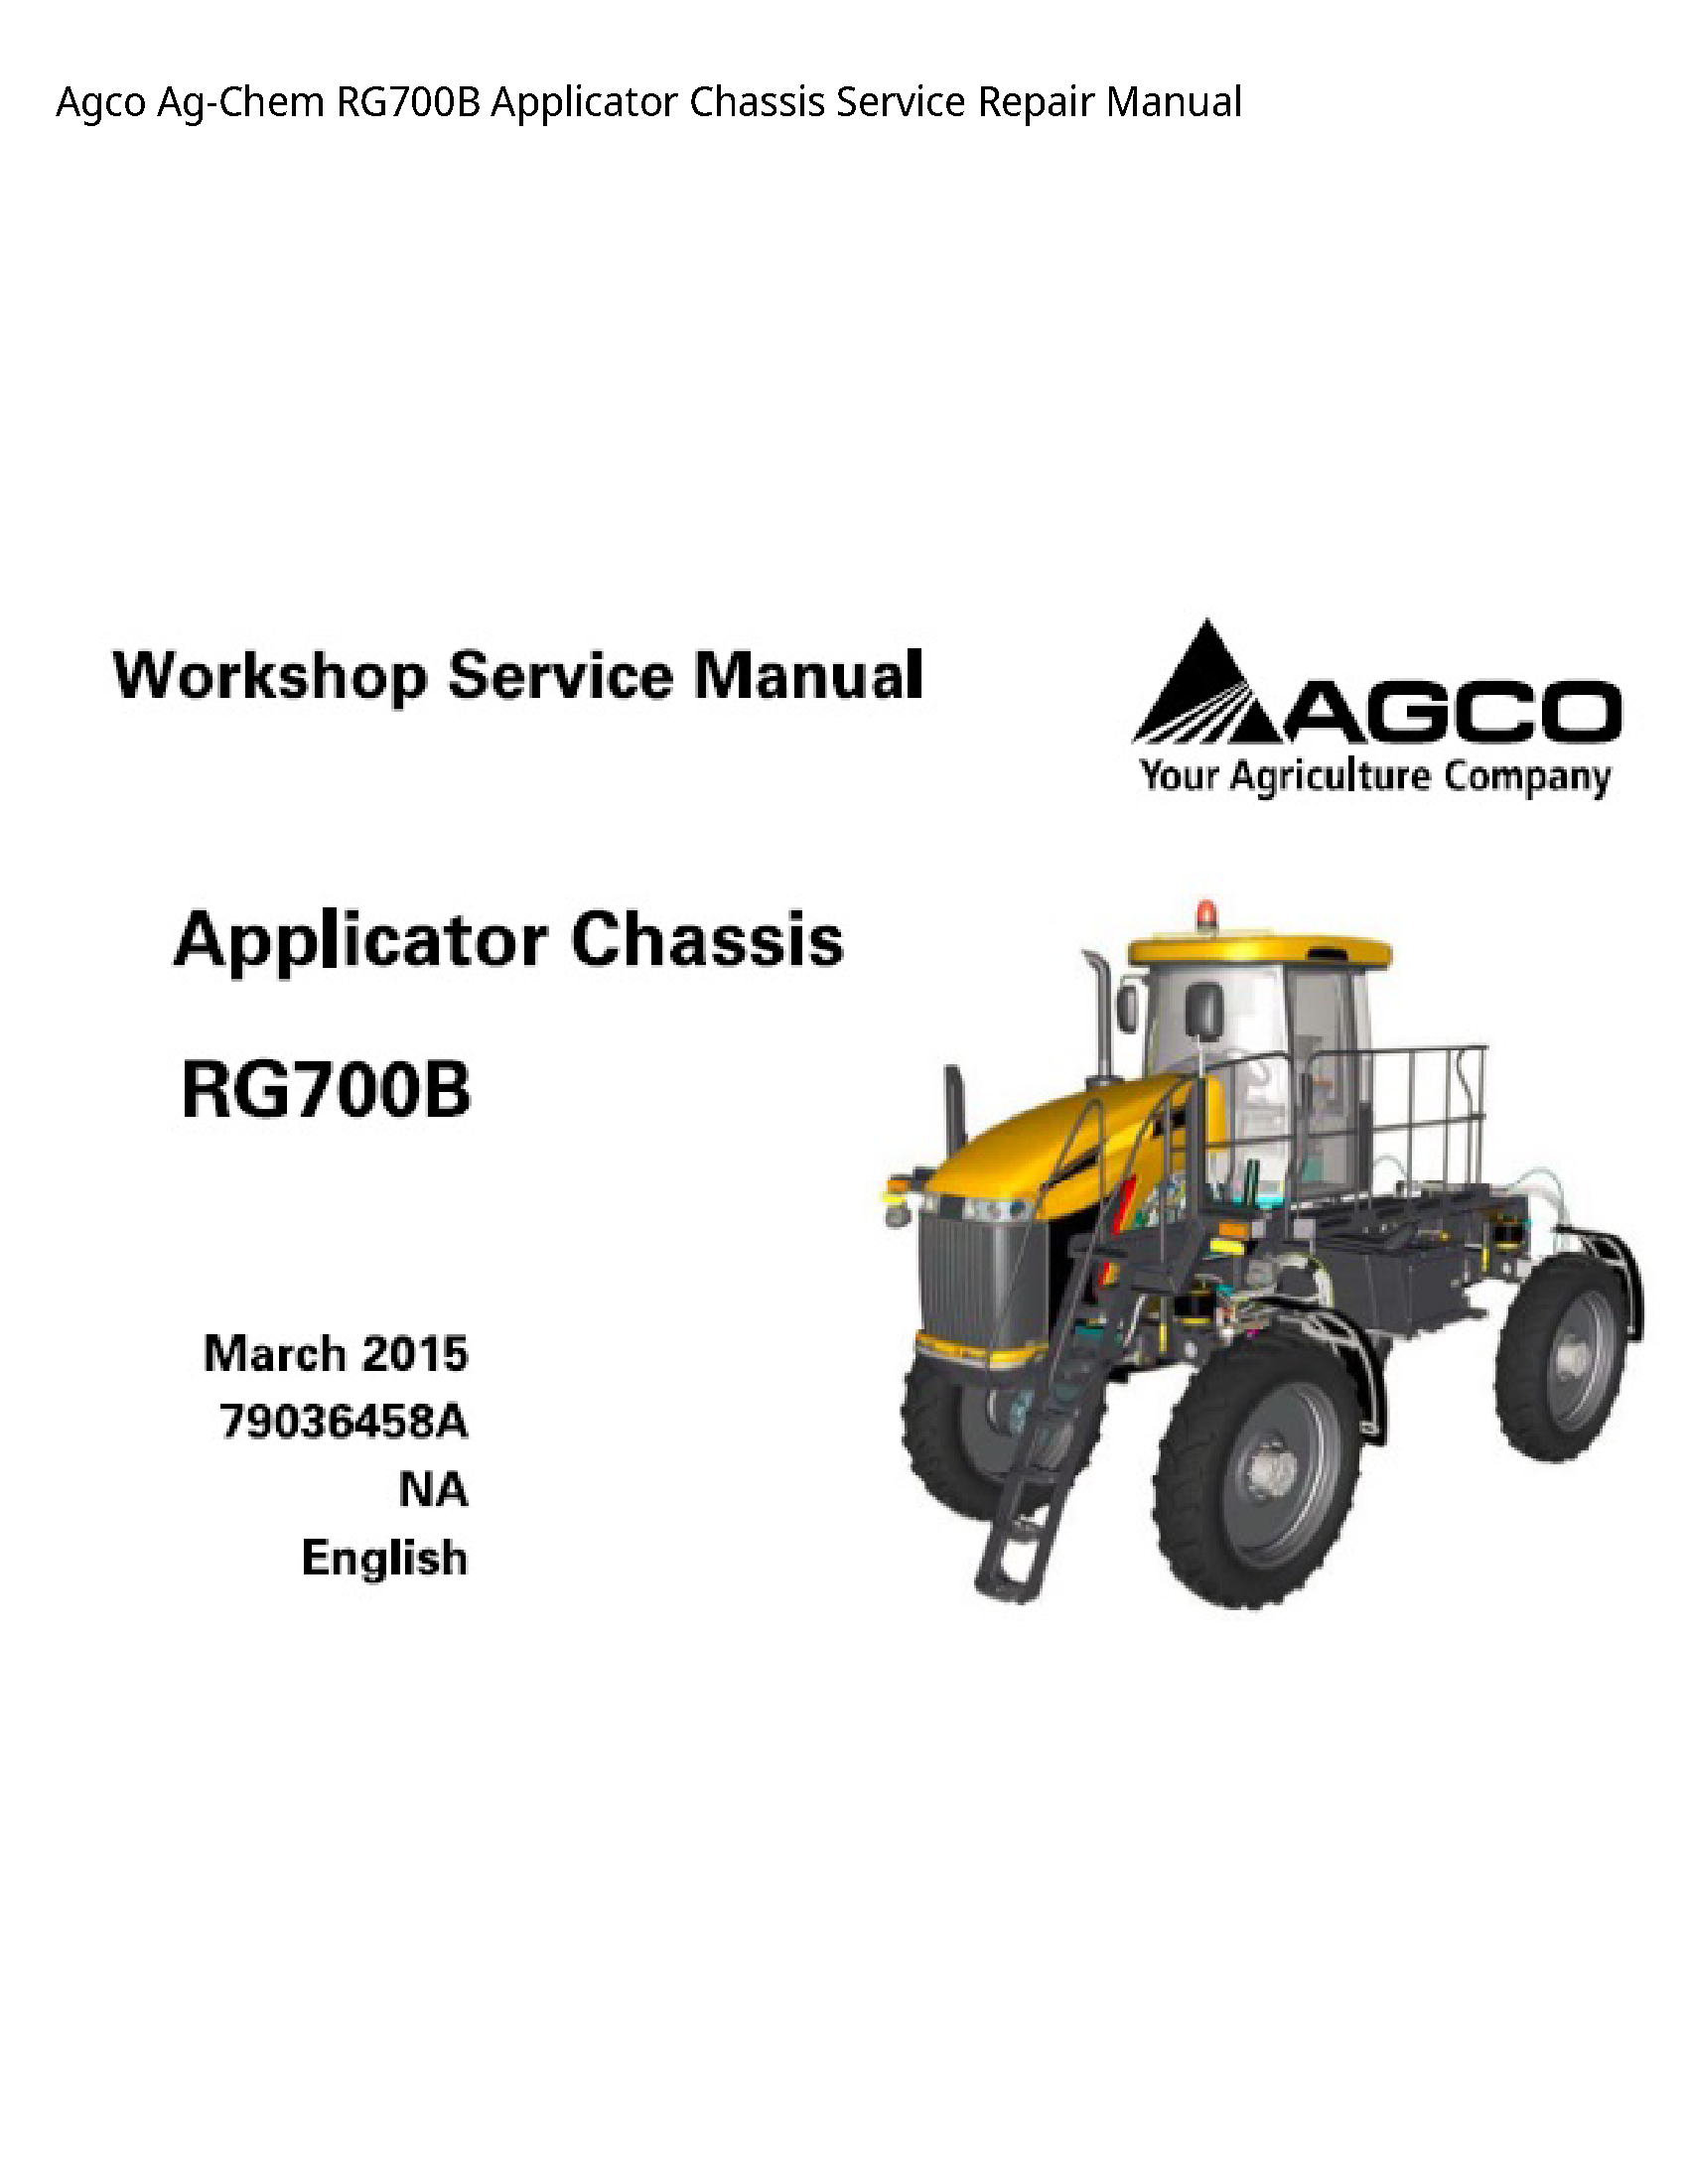 AGCO RG700B Ag-Chem Applicator Chassis manual